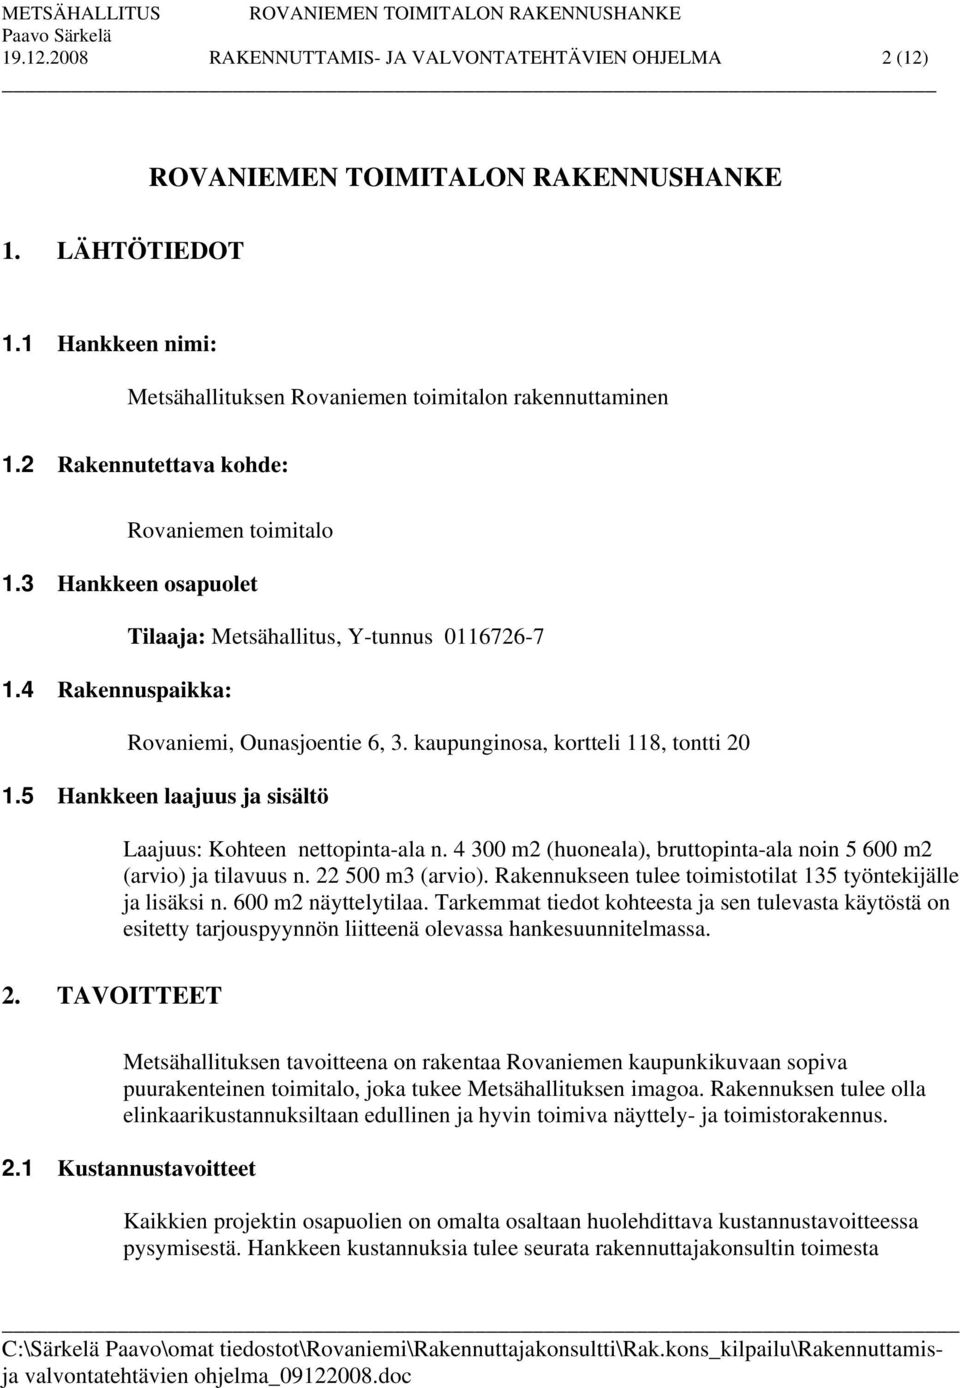 4 Rakennuspaikka: Tilaaja: Metsähallitus, Y-tunnus 0116726-7 Rovaniemi, Ounasjoentie 6, 3. kaupunginosa, kortteli 118, tontti 20 1.5 Hankkeen laajuus ja sisältö Laajuus: Kohteen nettopinta-ala n.